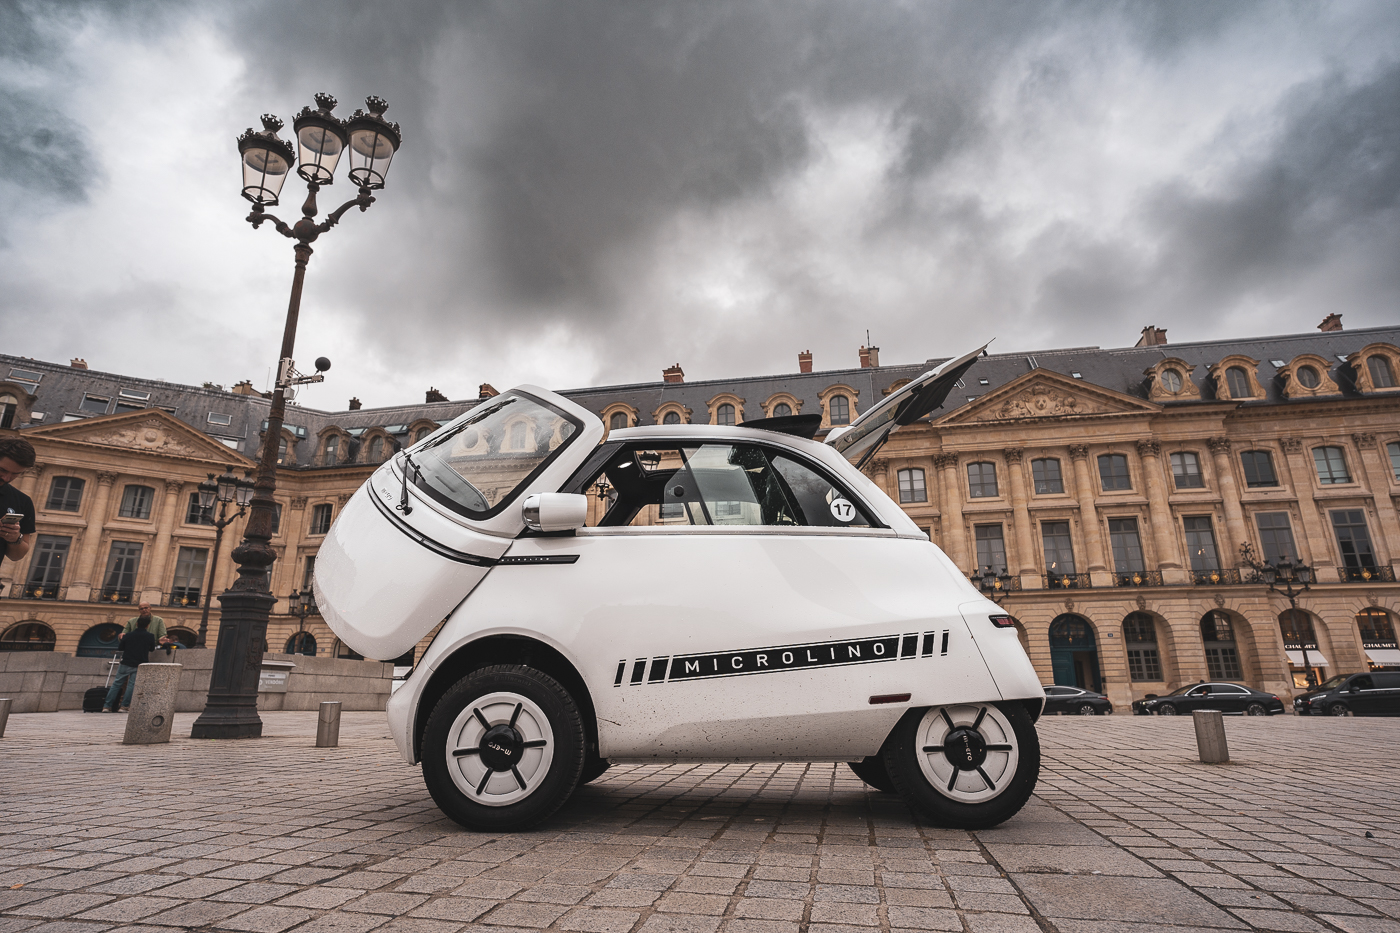 La microlino, une micro-voiture électrique inspirée des autos des